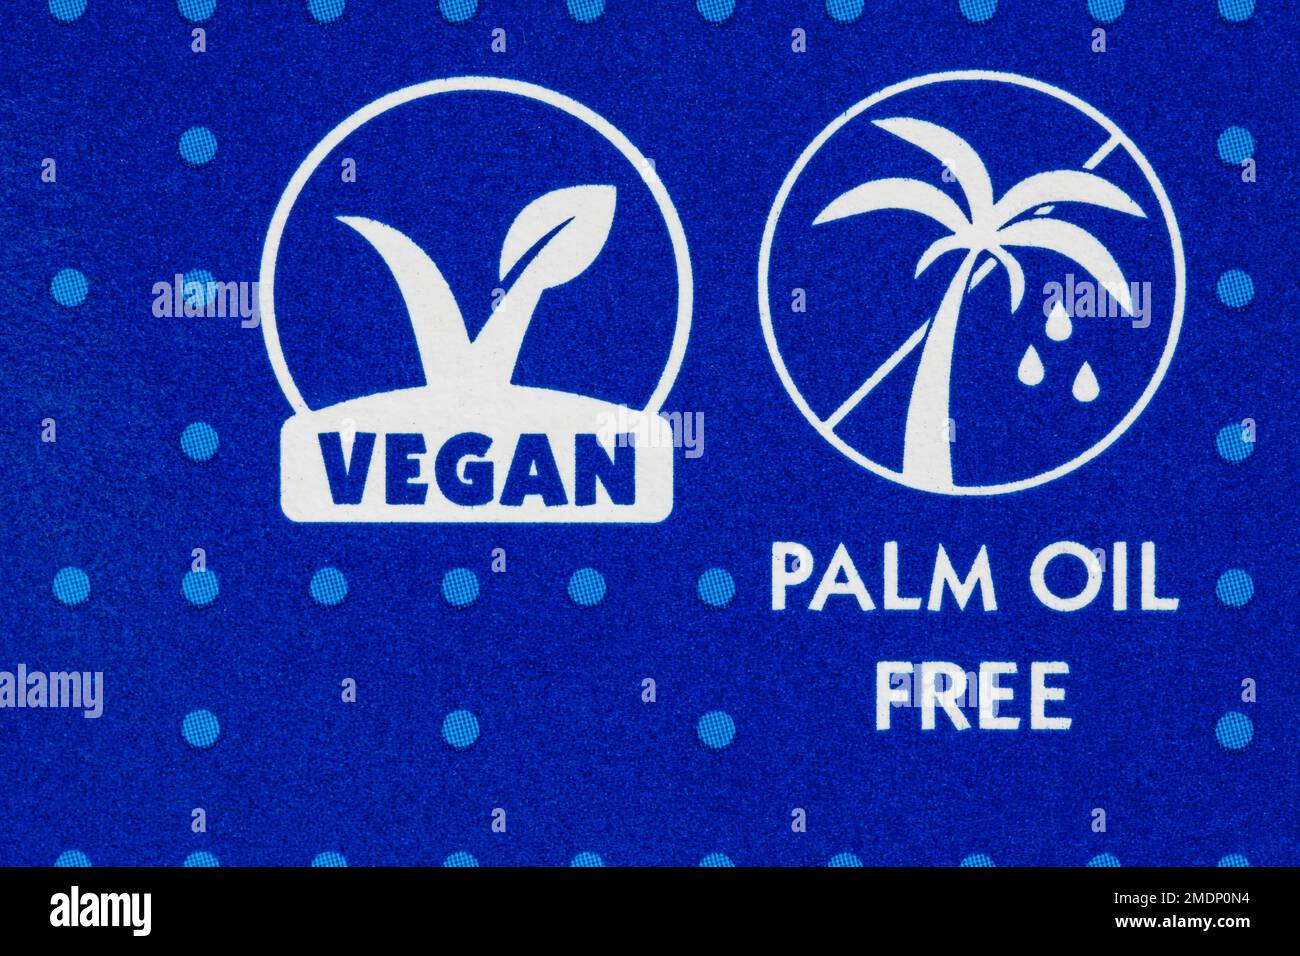 Vegane, palmenölfreie Details auf der Packung Matzos Flammencracker von Rakusen's of Yorkshire - vegan, vegetarisch und milchfrei Stockfoto